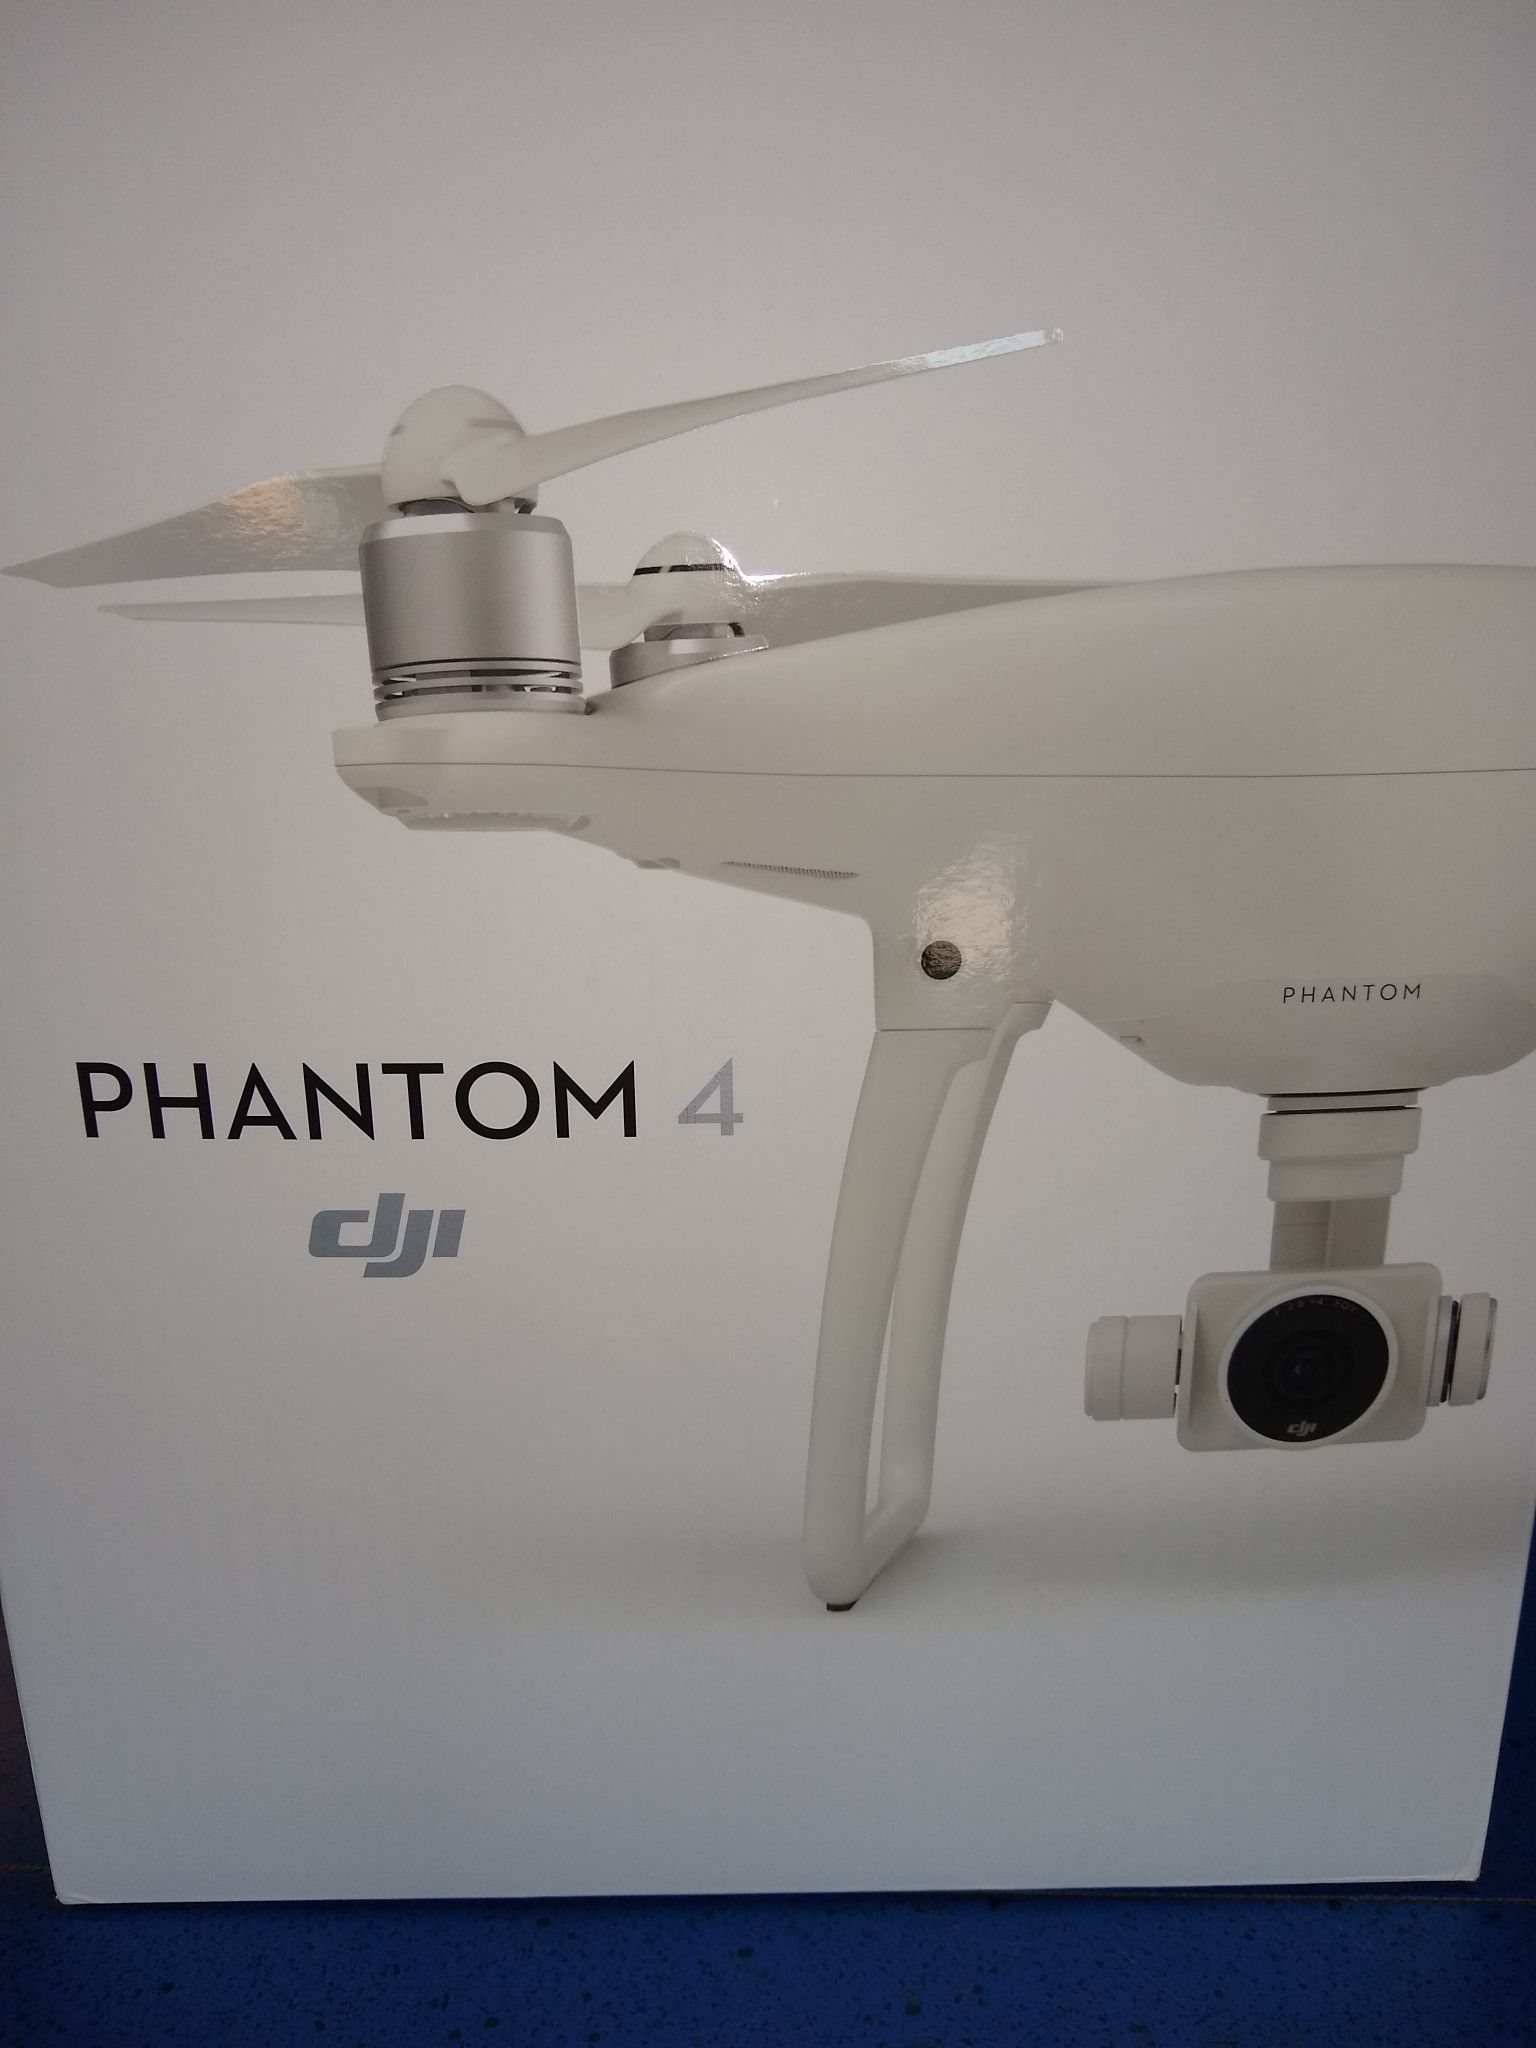 DJI phantom 4 drone